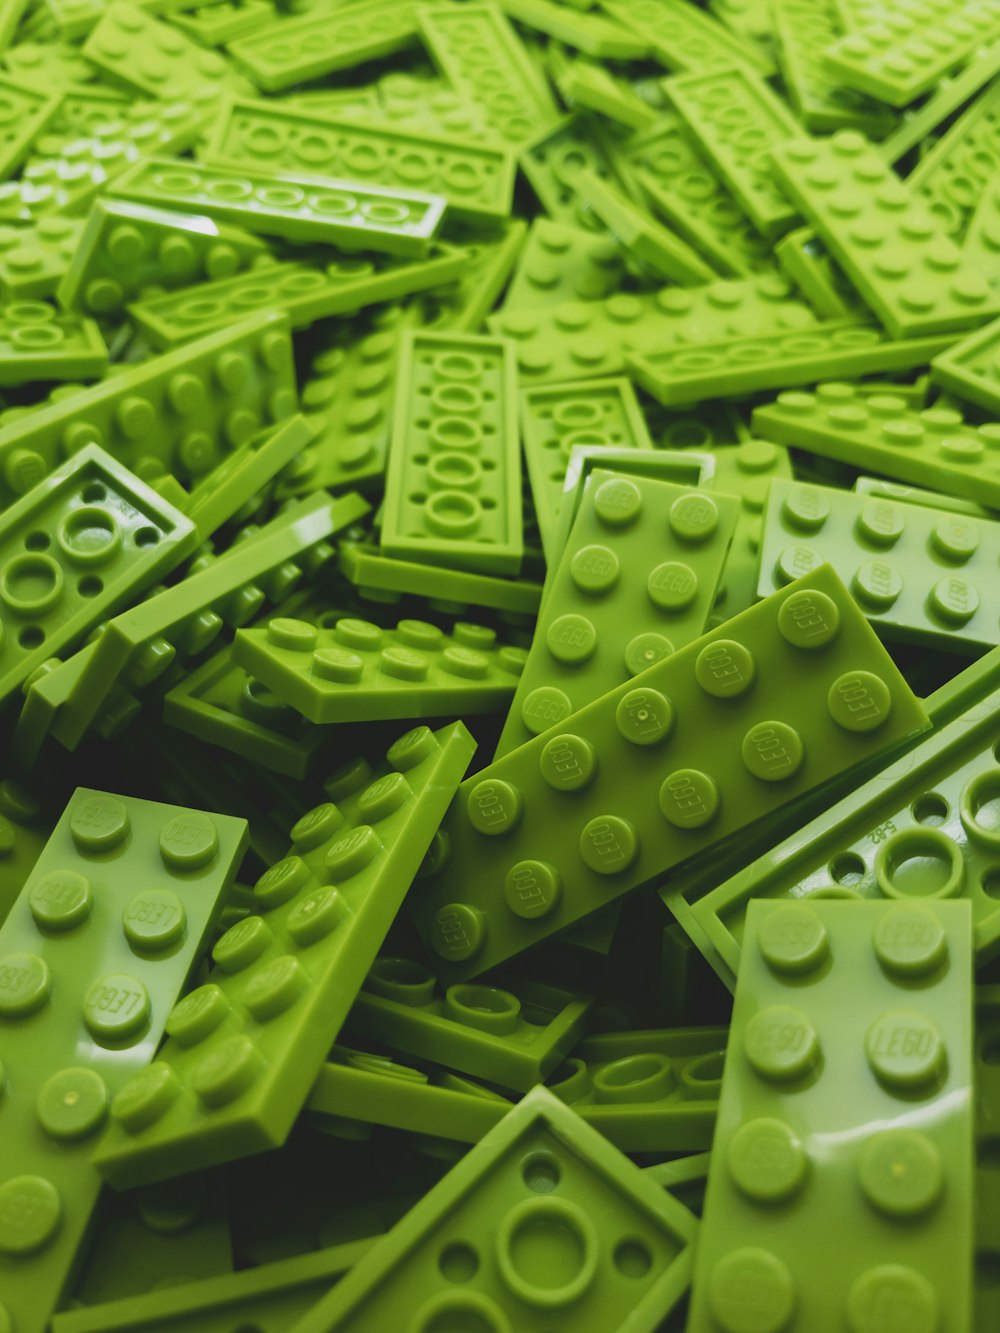 lote de bloco Lego verde